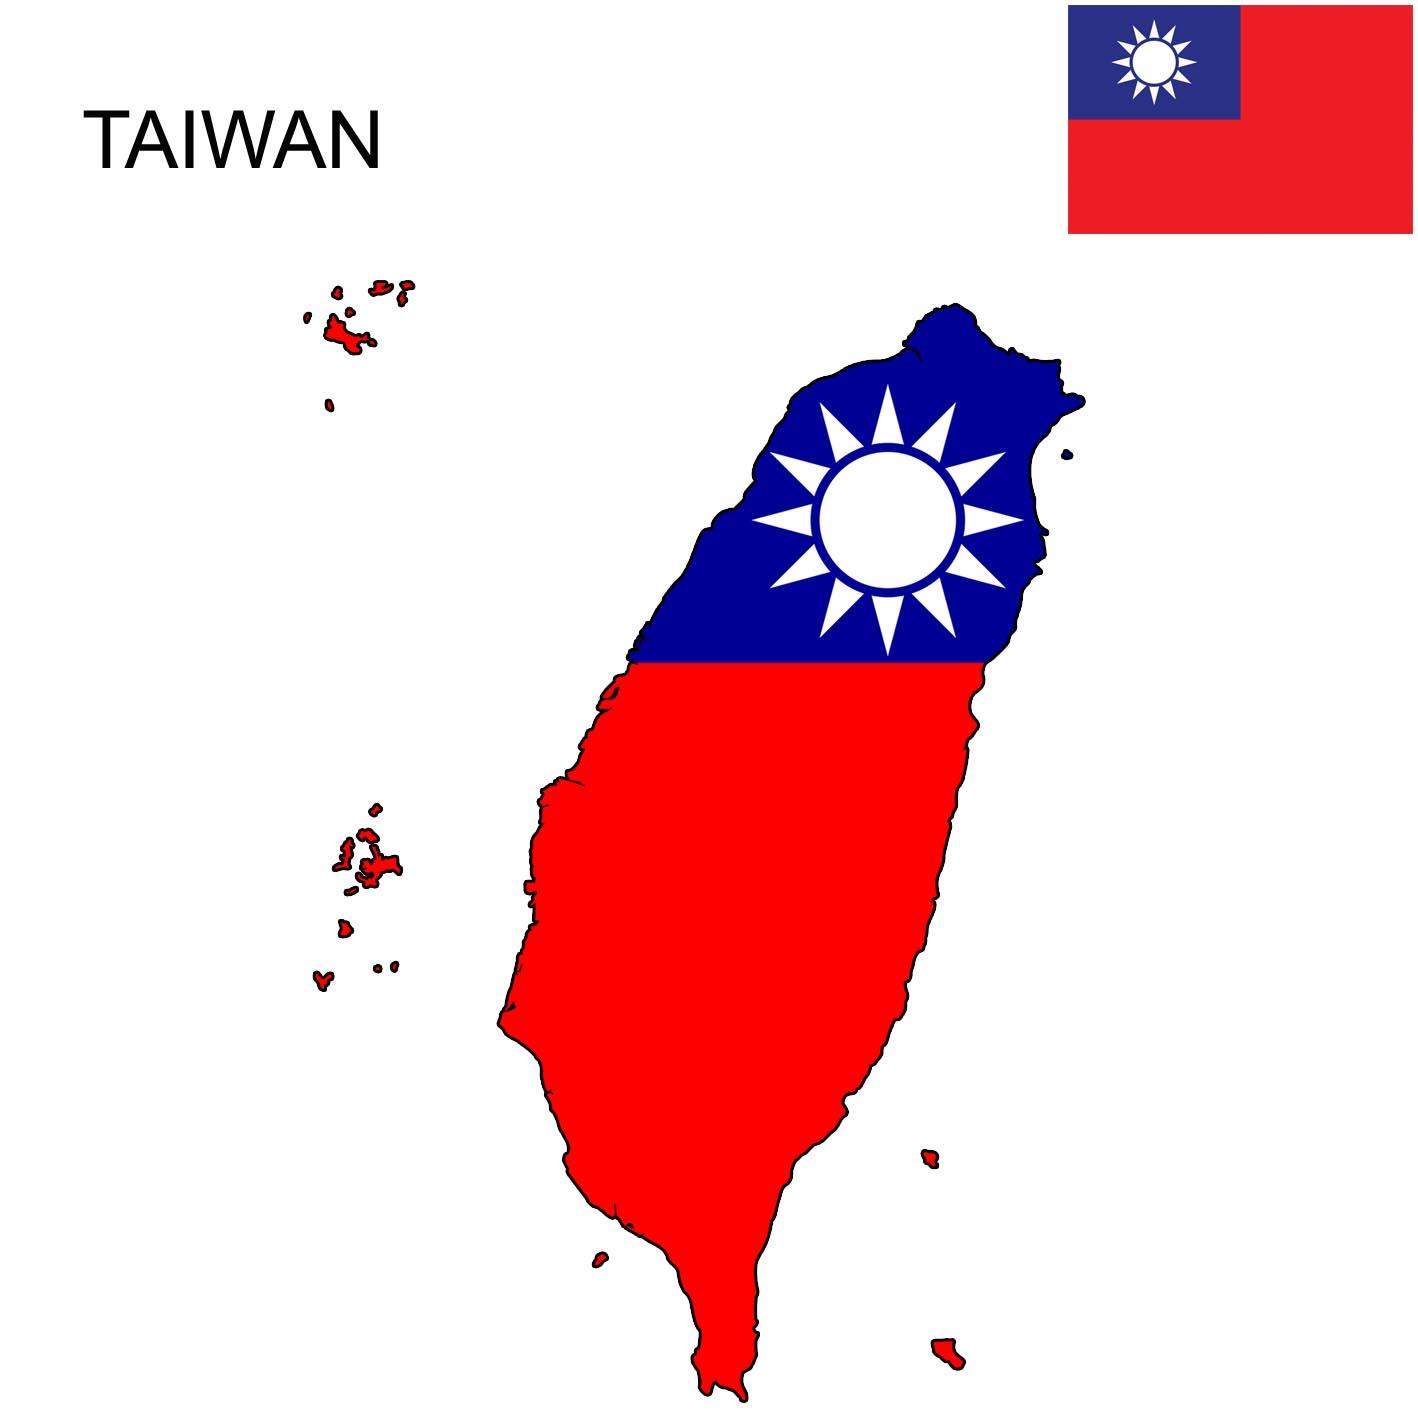 Bản đồ Đài Loan: Đài Loan có một nền văn hóa đa dạng và lịch sử phong phú. Từ những núi non đến các thành phố sầm uất, bản đồ Đài Loan cho thấy sự đa dạng và phong phú của đất nước. Hãy xem hình ảnh để khám phá Đài Loan từ trên cao!